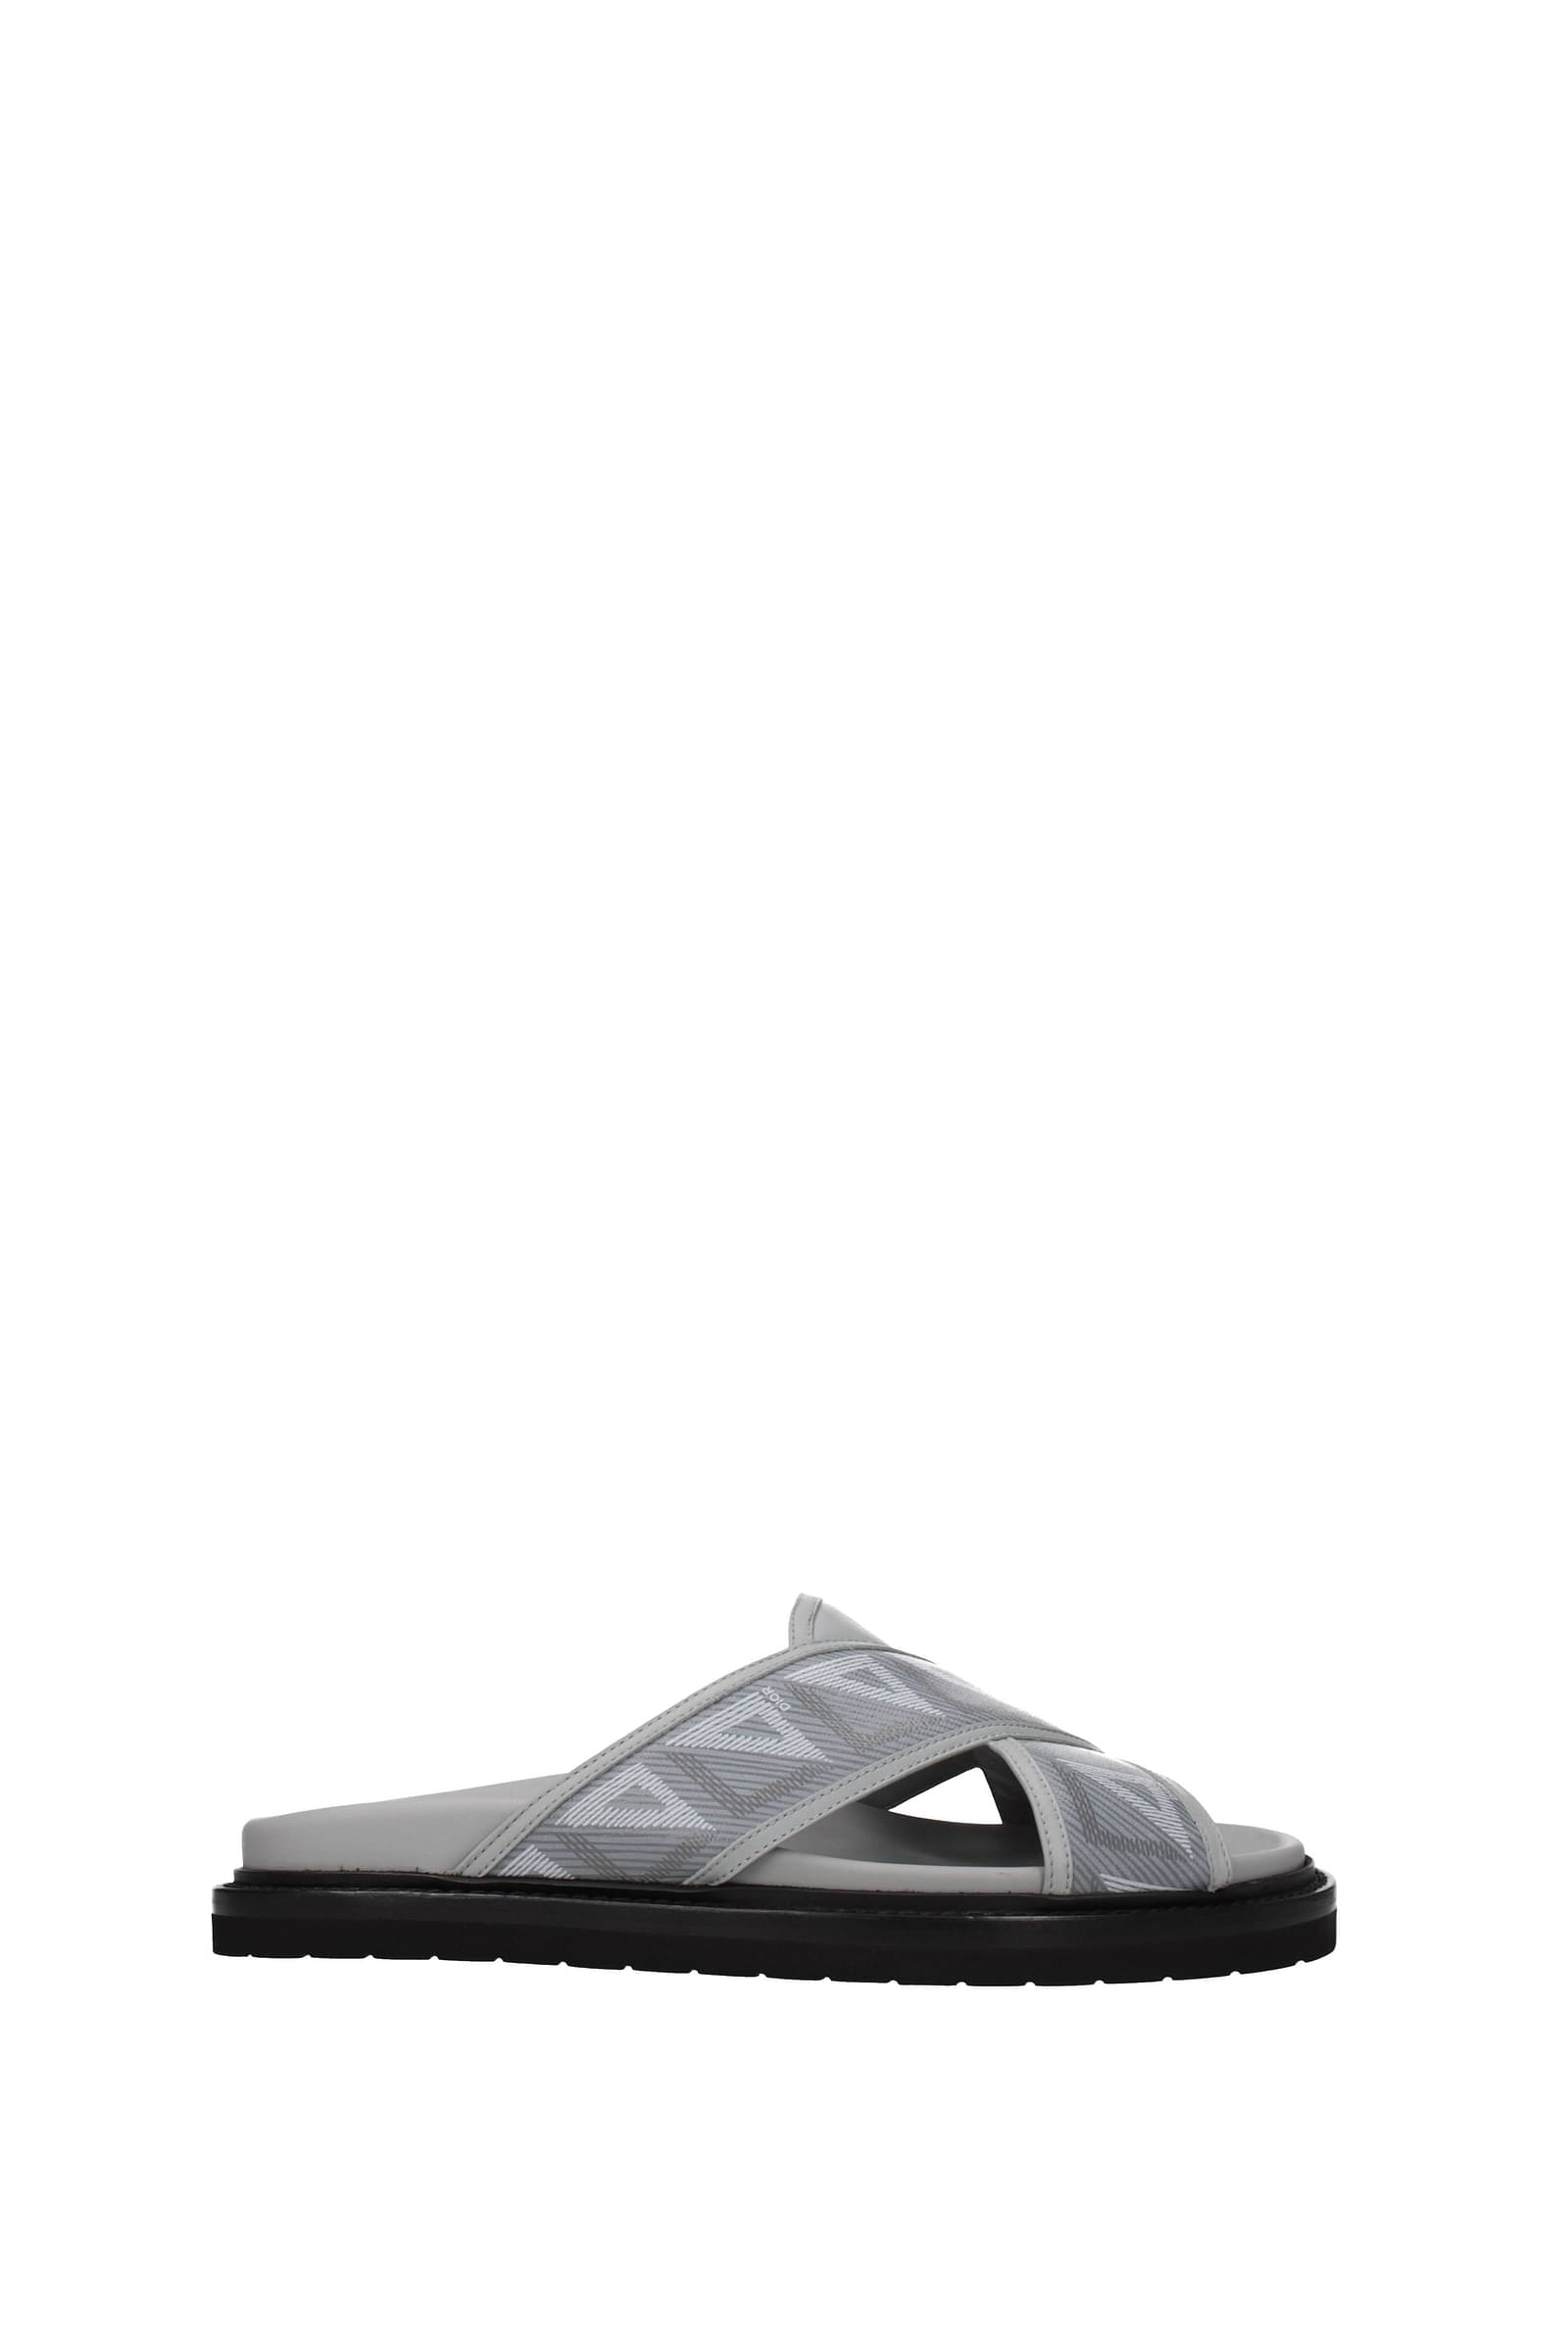 Dép nam Dior sandal da trơn họa tiết quai chữ logo trắng DDR42 siêu cấp   TheK2Deluxe